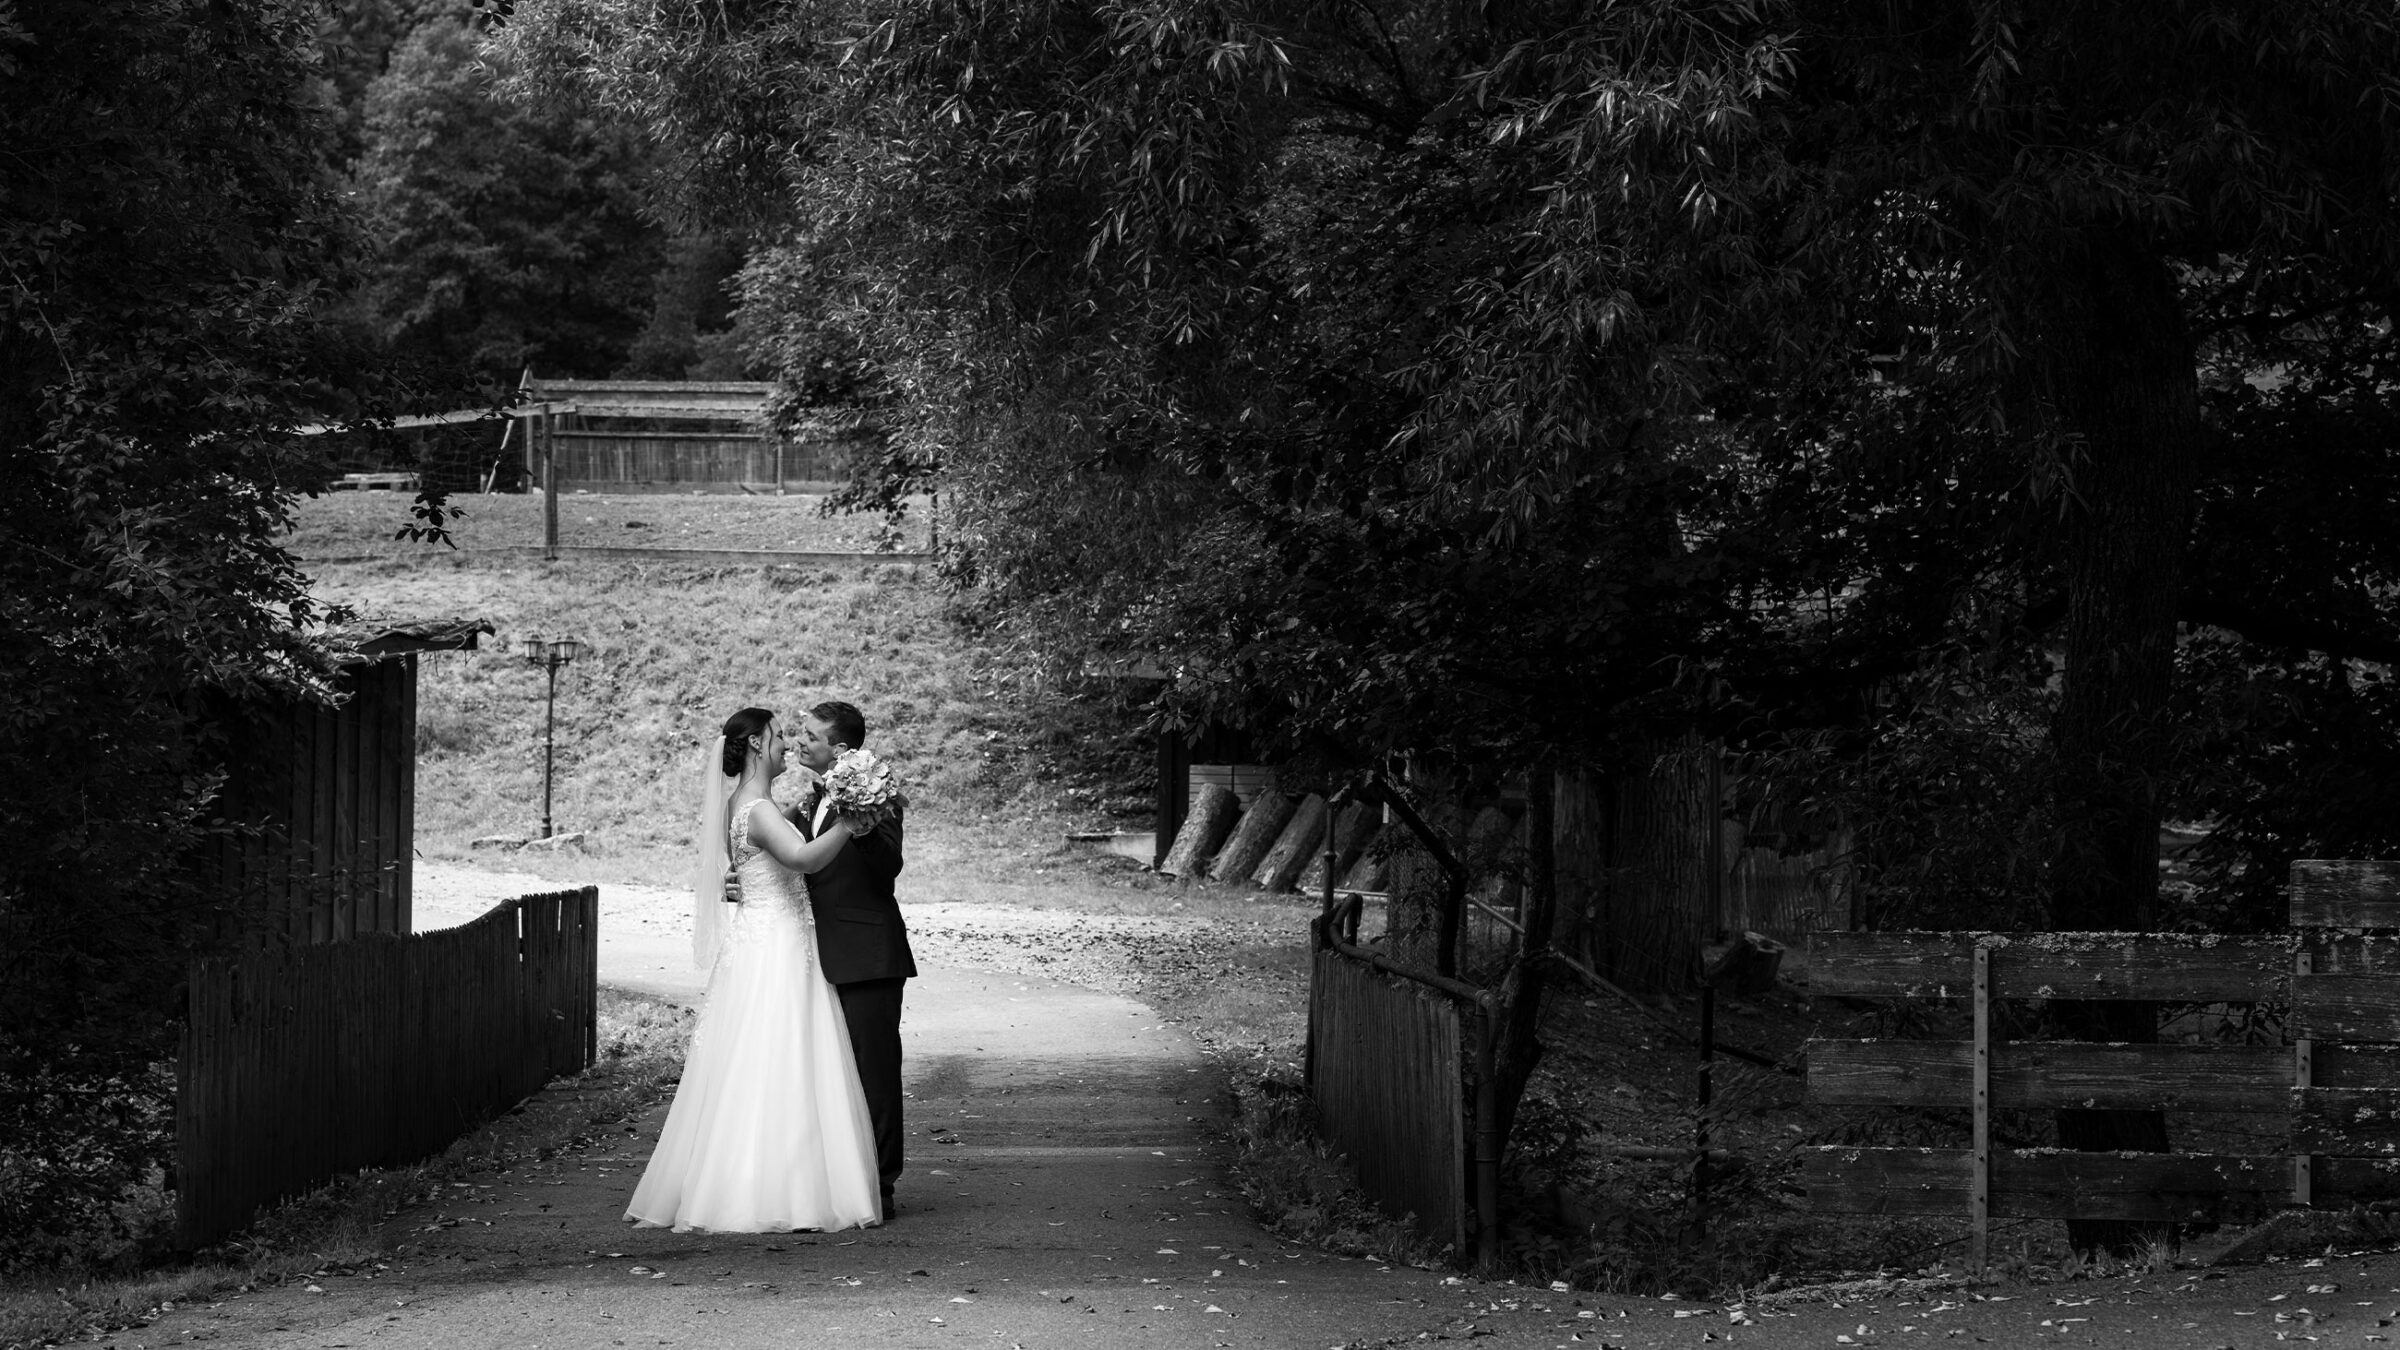 Braut und Bräutigam küssen sich auf einem ländlichen Weg, umgeben von Bäumen und Holzzäunen.